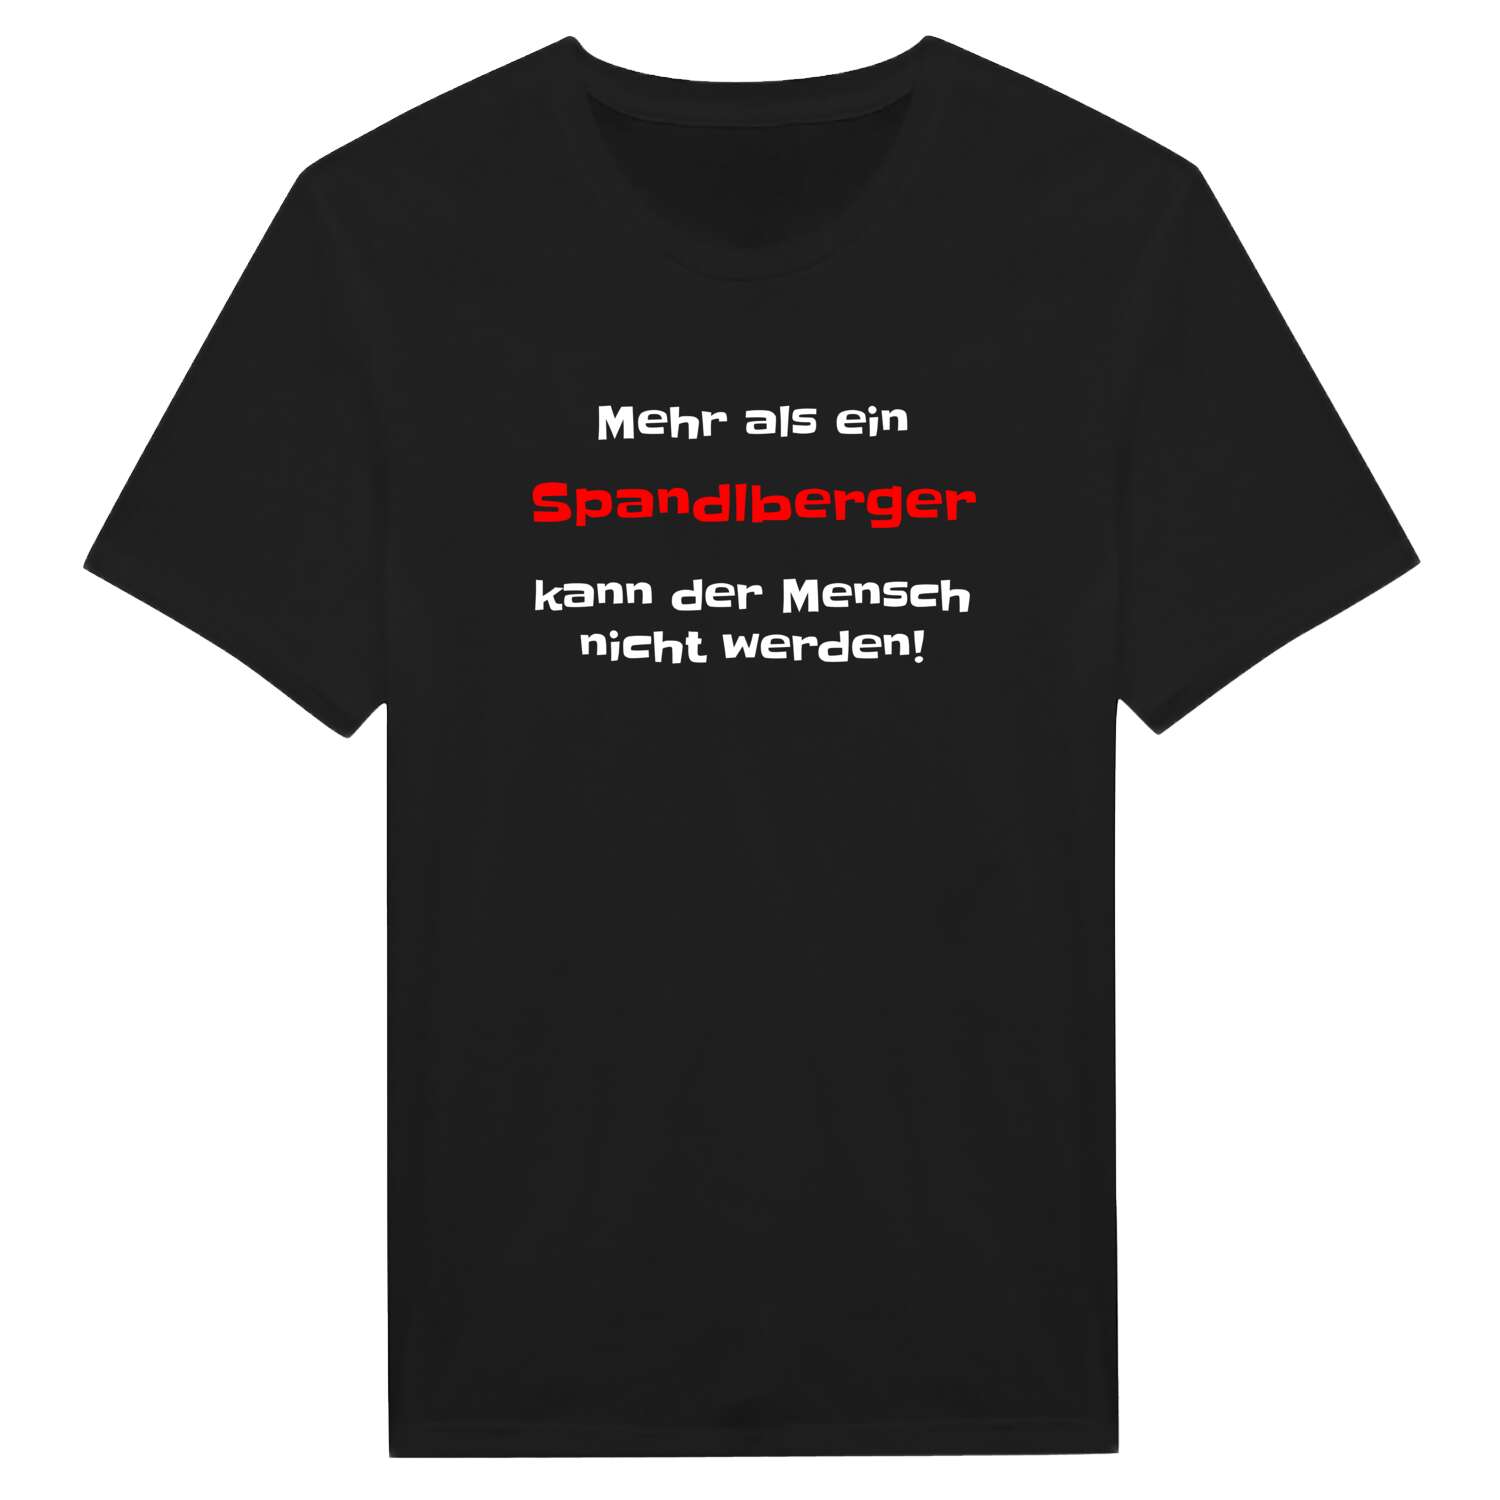 Spandlberg T-Shirt »Mehr als ein«